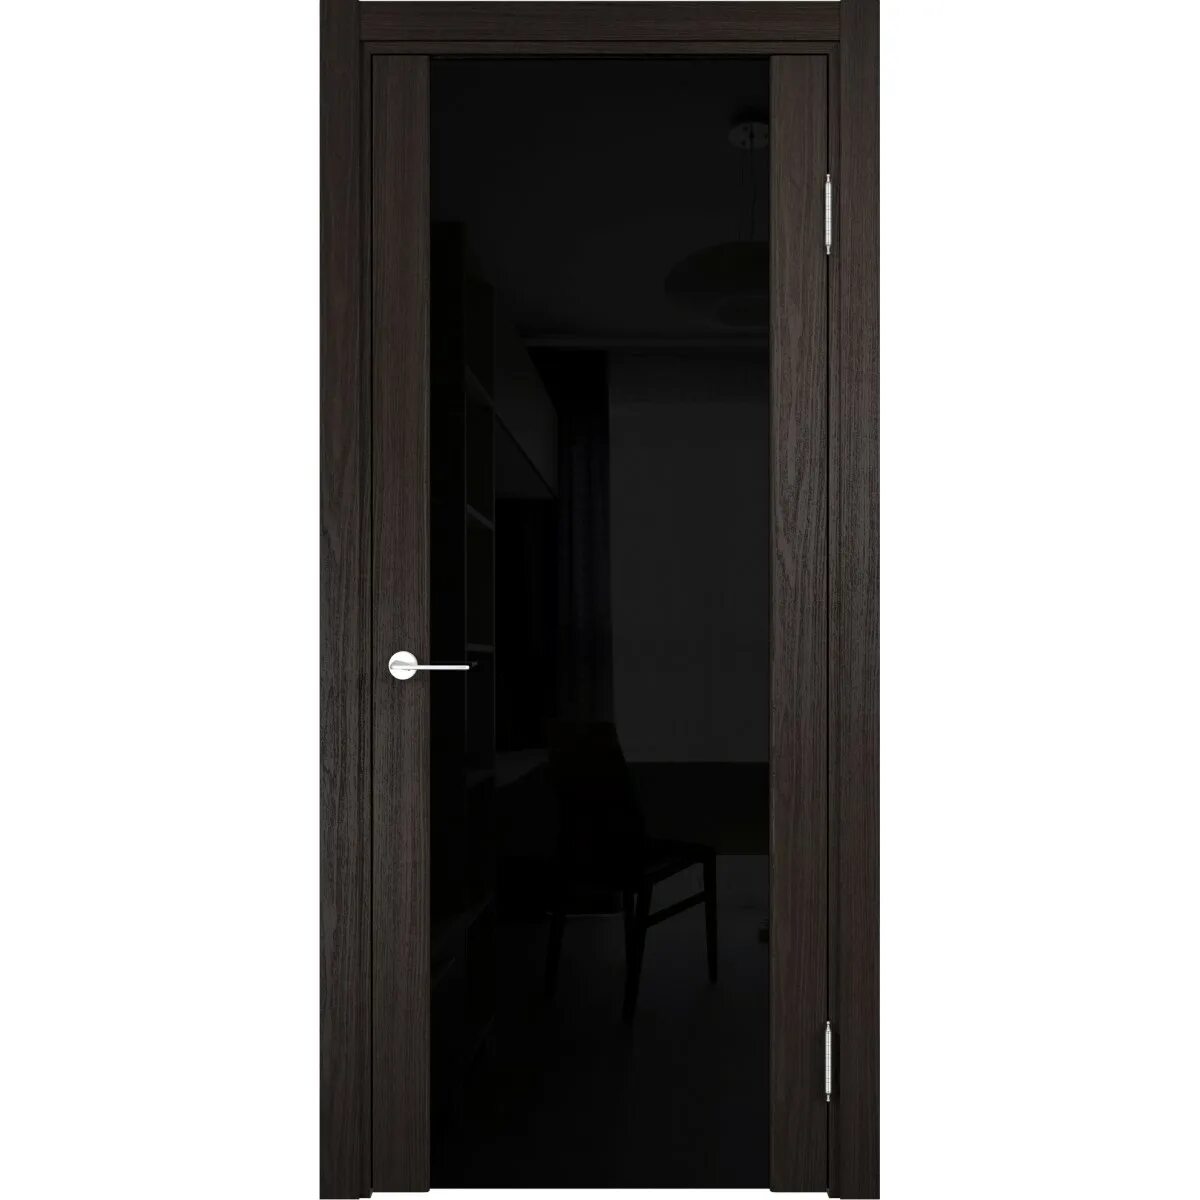 Межкомнатные двери венге стекло. Двери межкомнатные Сан Ремо дуб шоколад. Дверь межкомнатная Сан-Ремо остекленная. Дверь Фрамир триплекс 70 венге. Дверь Сан Ремо со стеклом венге.